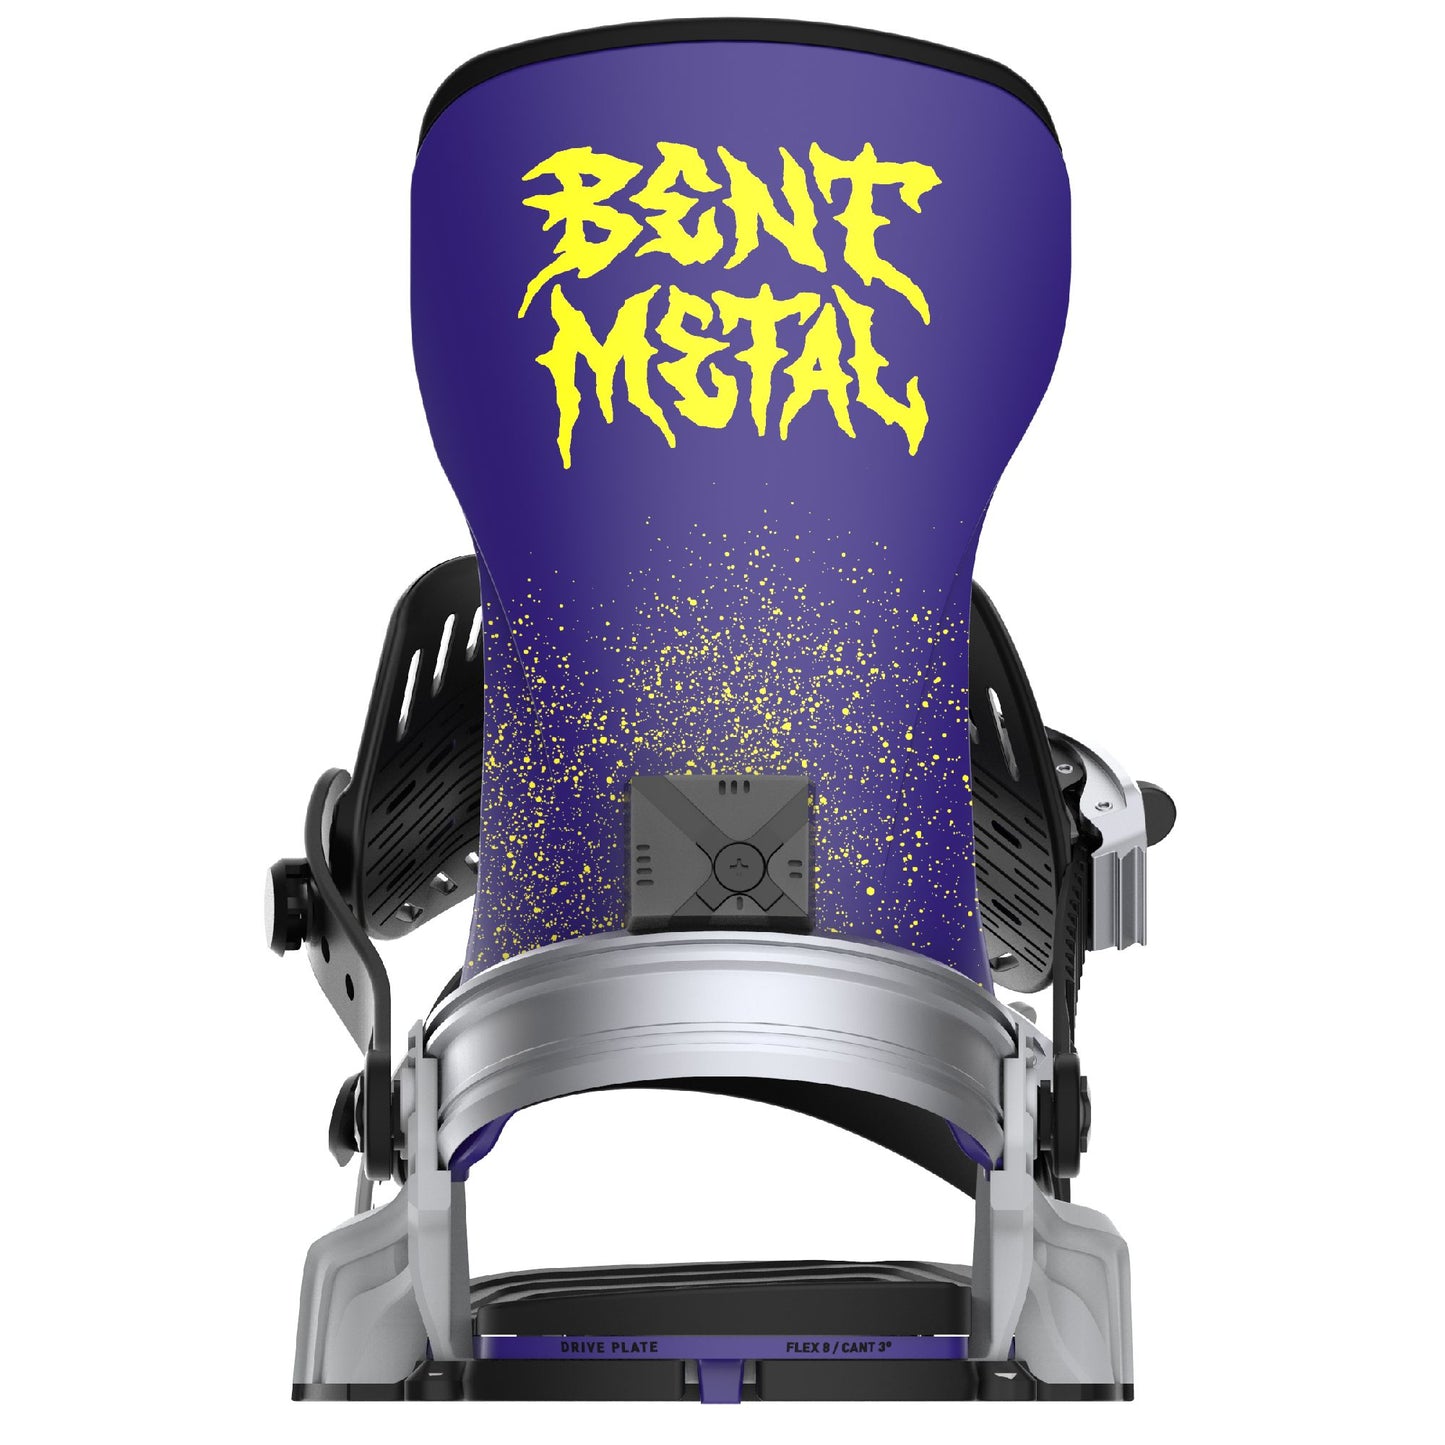 Bent Metal Transfer Snowboard Bindings Grey Purple - Bent Metal Snowboard Bindings